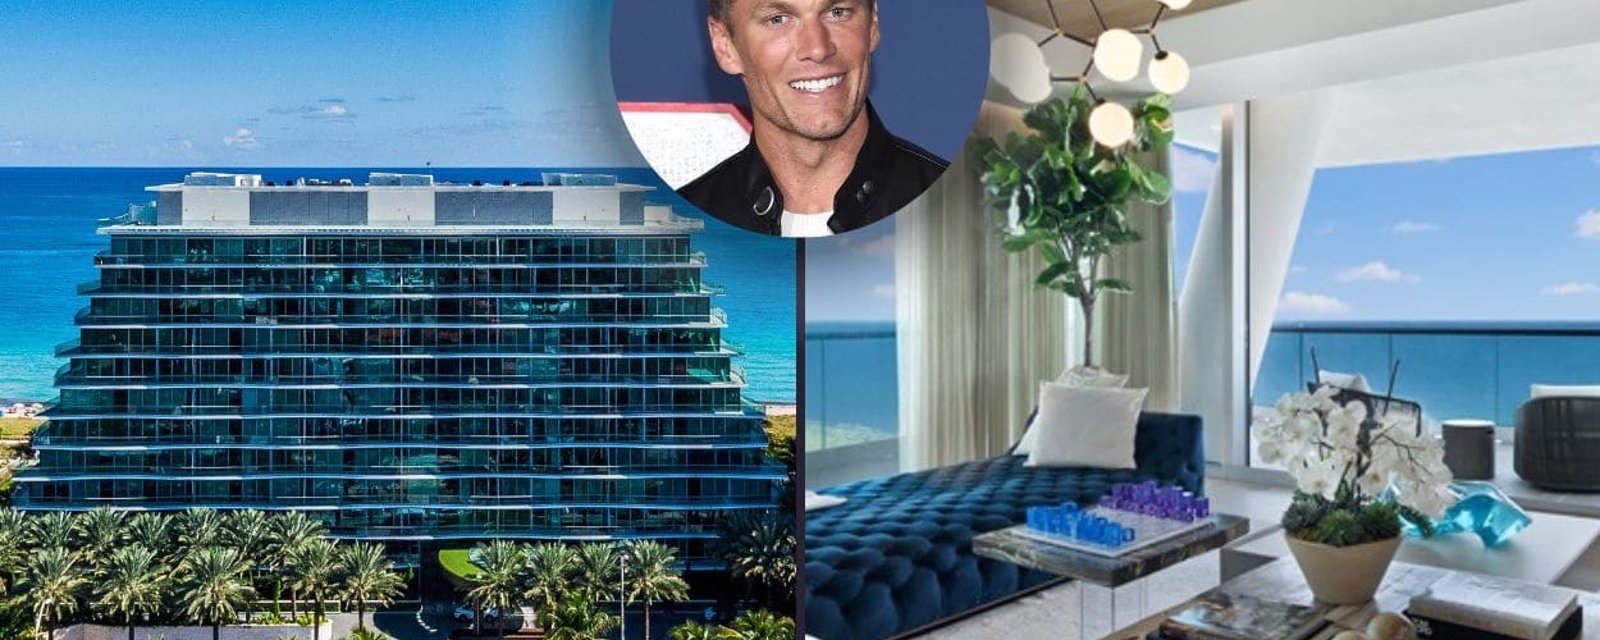 L’ancien quart-arrière Tom Brady vend son superbe appartement de Floride